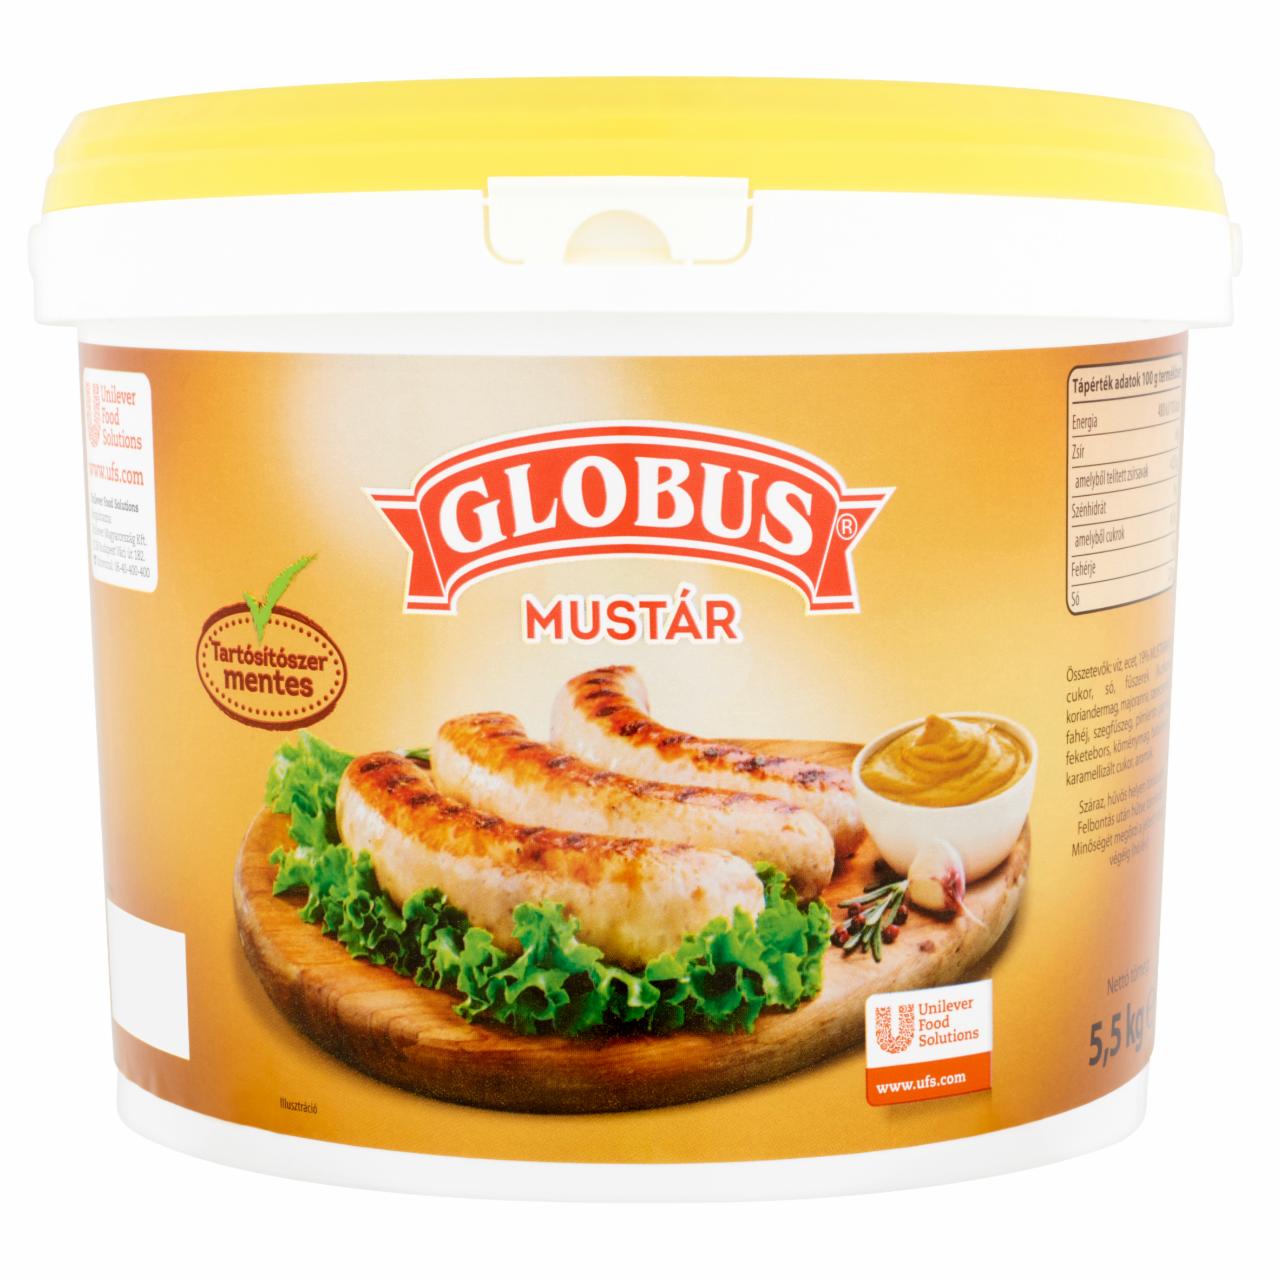 Képek - Globus mustár 5,5 kg